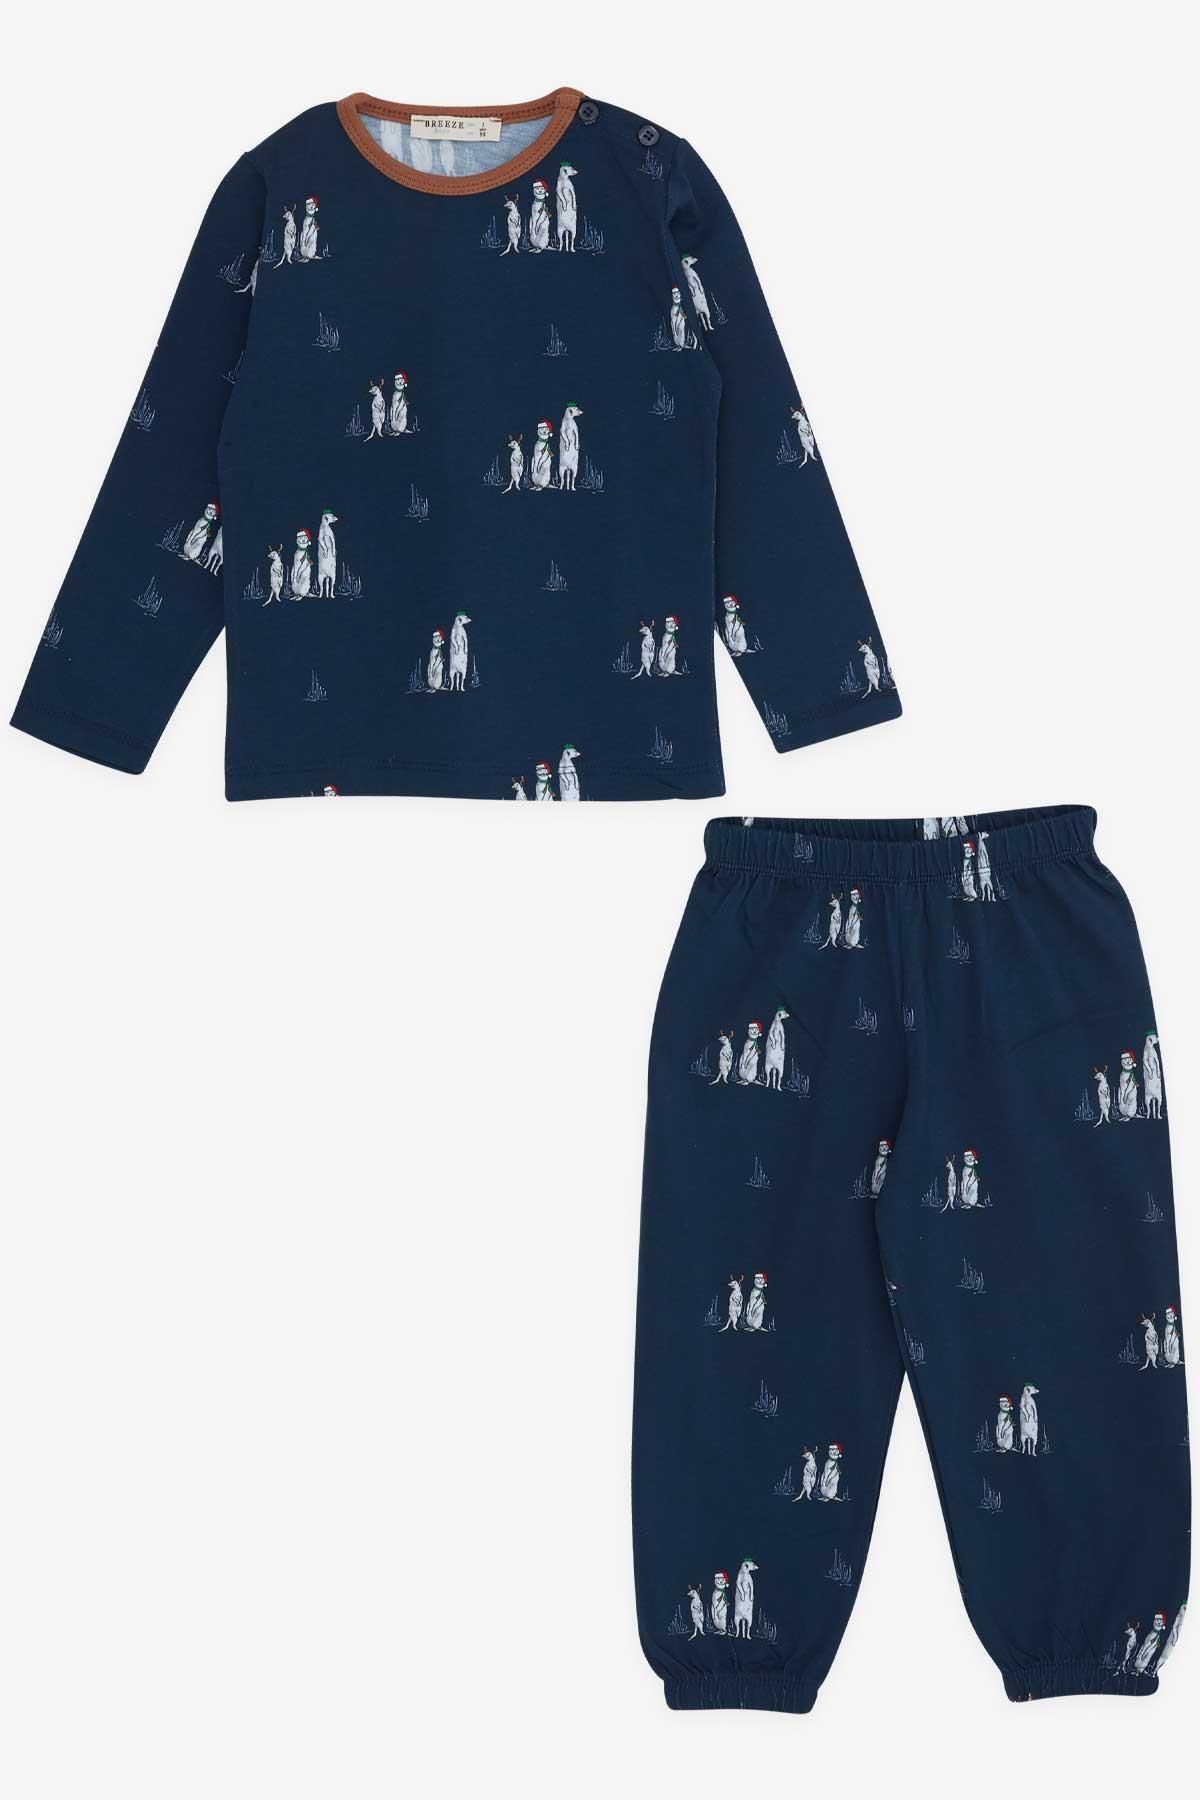 Breeze Erkek Bebek Pijama Takımı Yılbaşı Temalı 9 Ay-3 Yaş, Lacivert